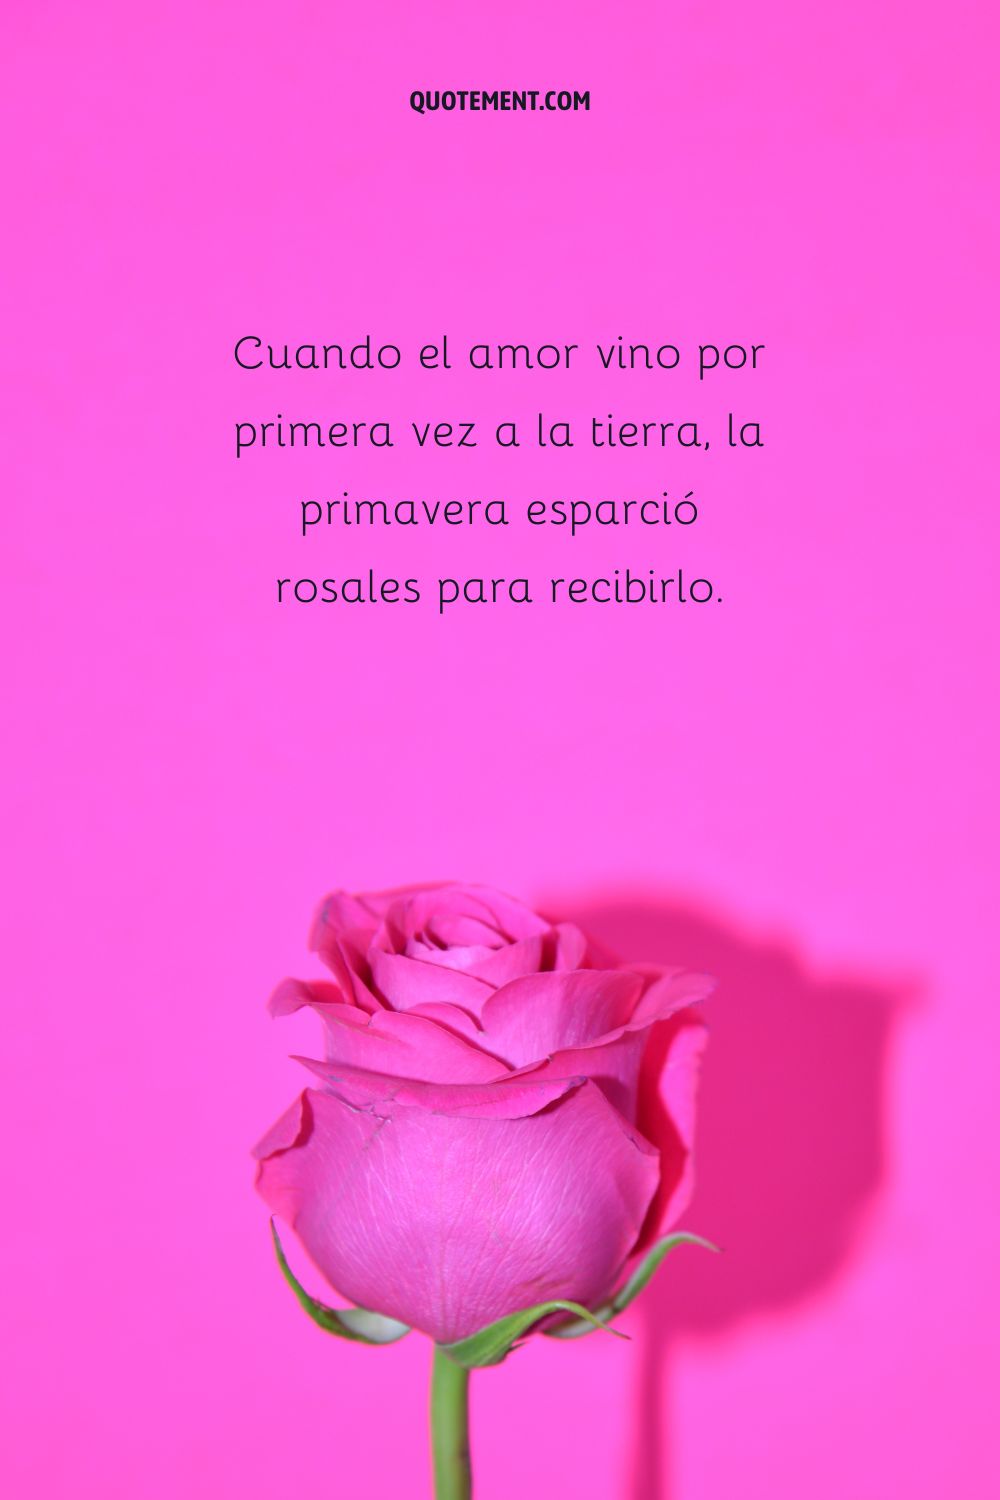 Cuando el amor vino por primera vez a la tierra, la primavera esparció rosales para recibirlo.